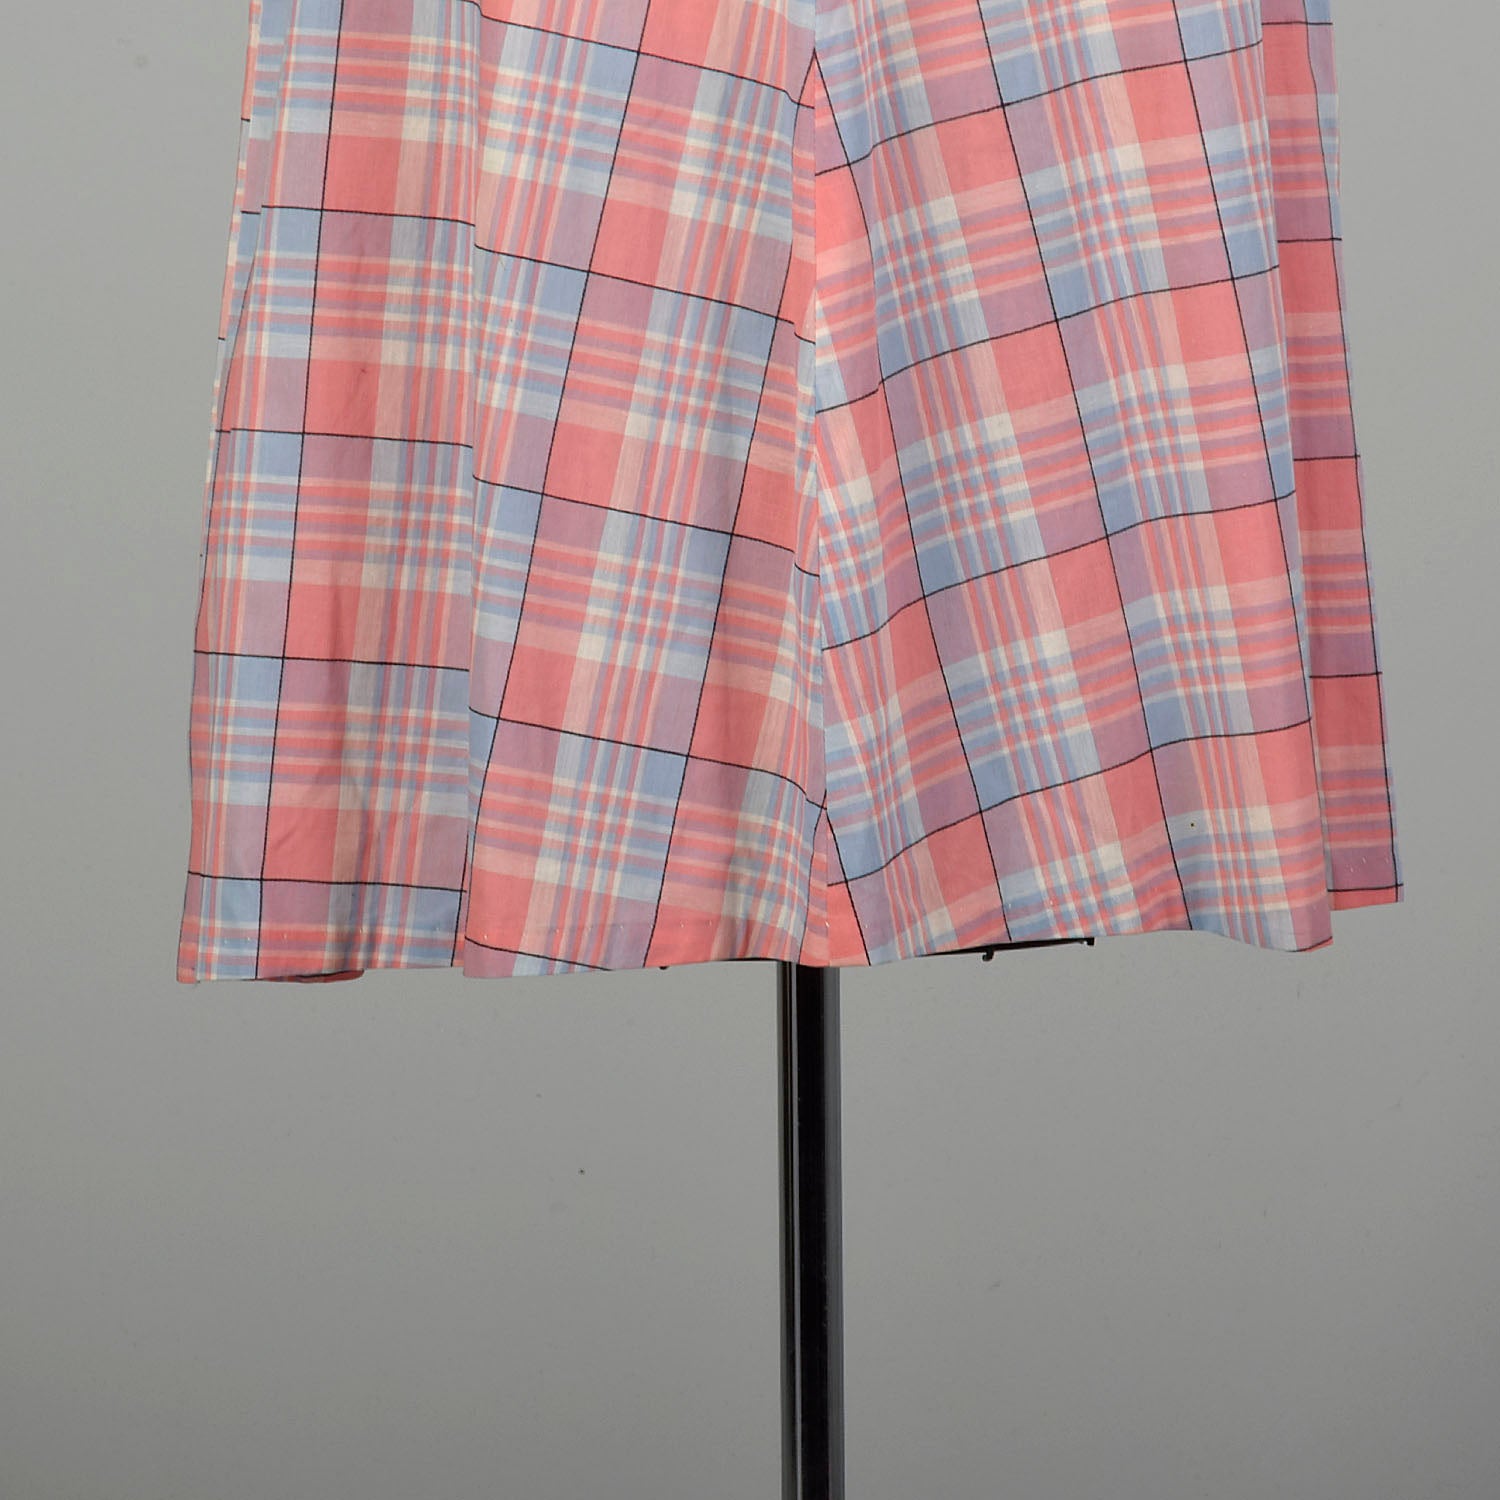 XL 1950s Pink Plaid Summer Day Shirtwaist Dress